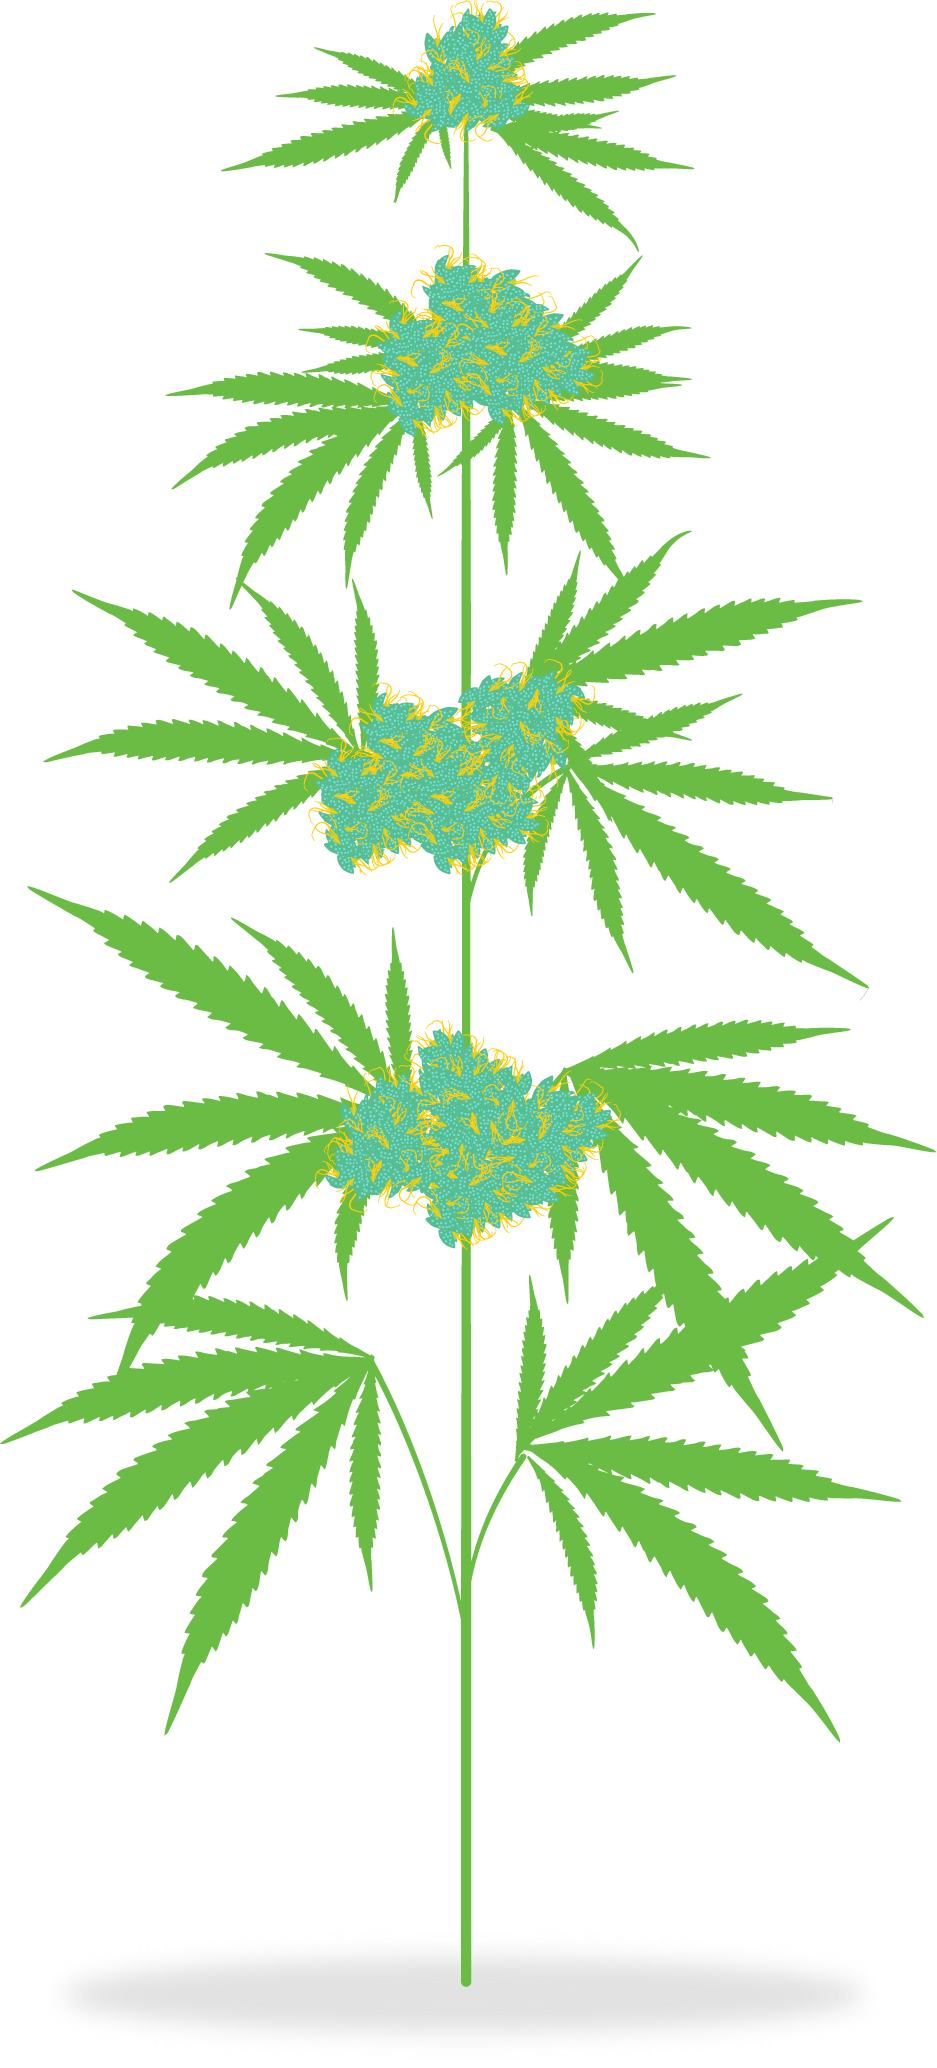 The Cannabis Plant - Cannabis Plant Clipart (937x2068)